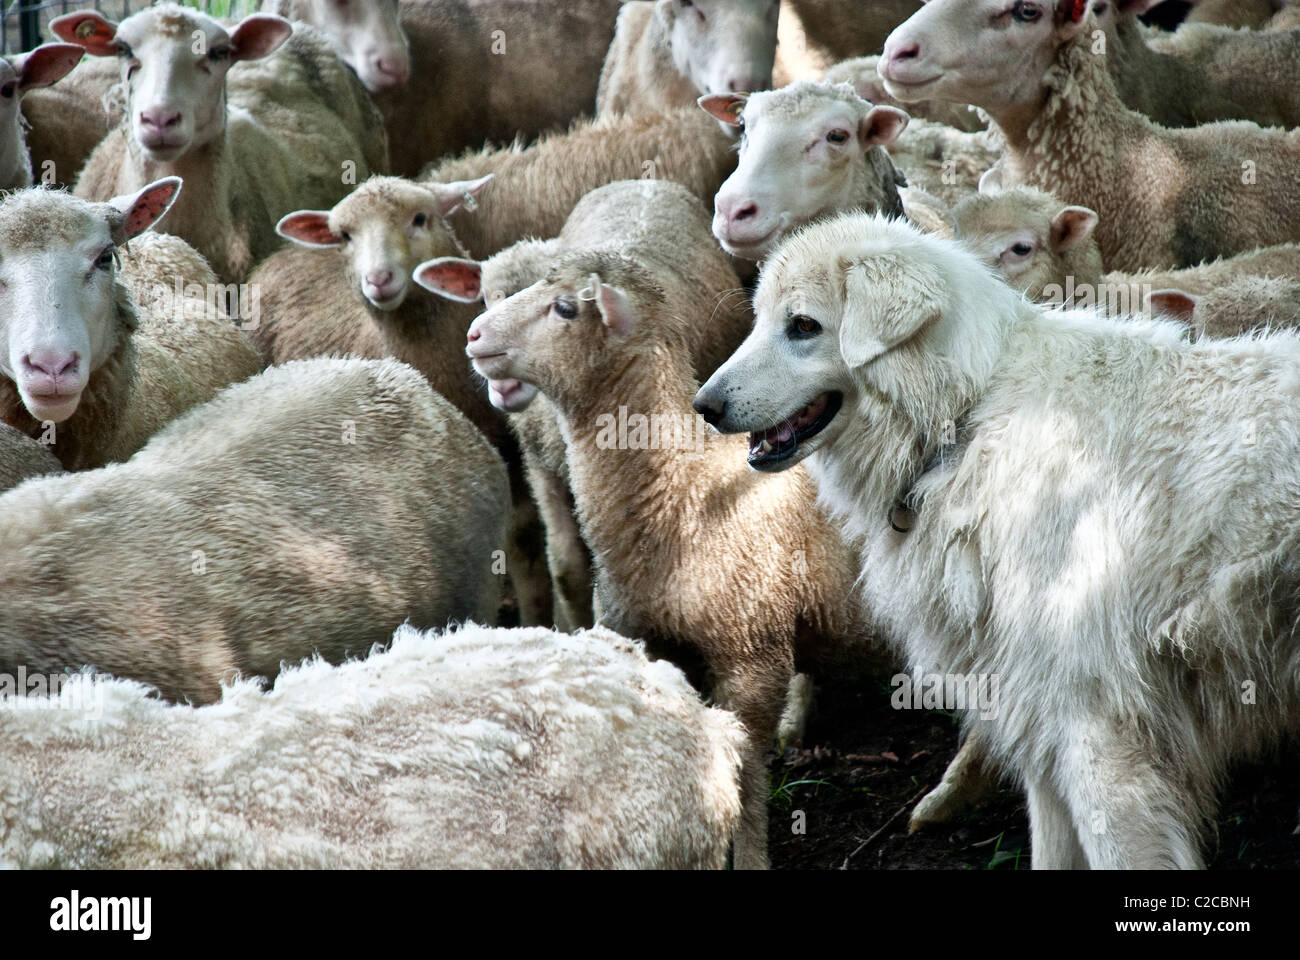 Maremma Ovejero Finn-Dorset pastoreo ovino, Stone Barns Center para la alimentación y la agricultura, Pocantico Hills, Nueva York, EE.UU. Foto de stock